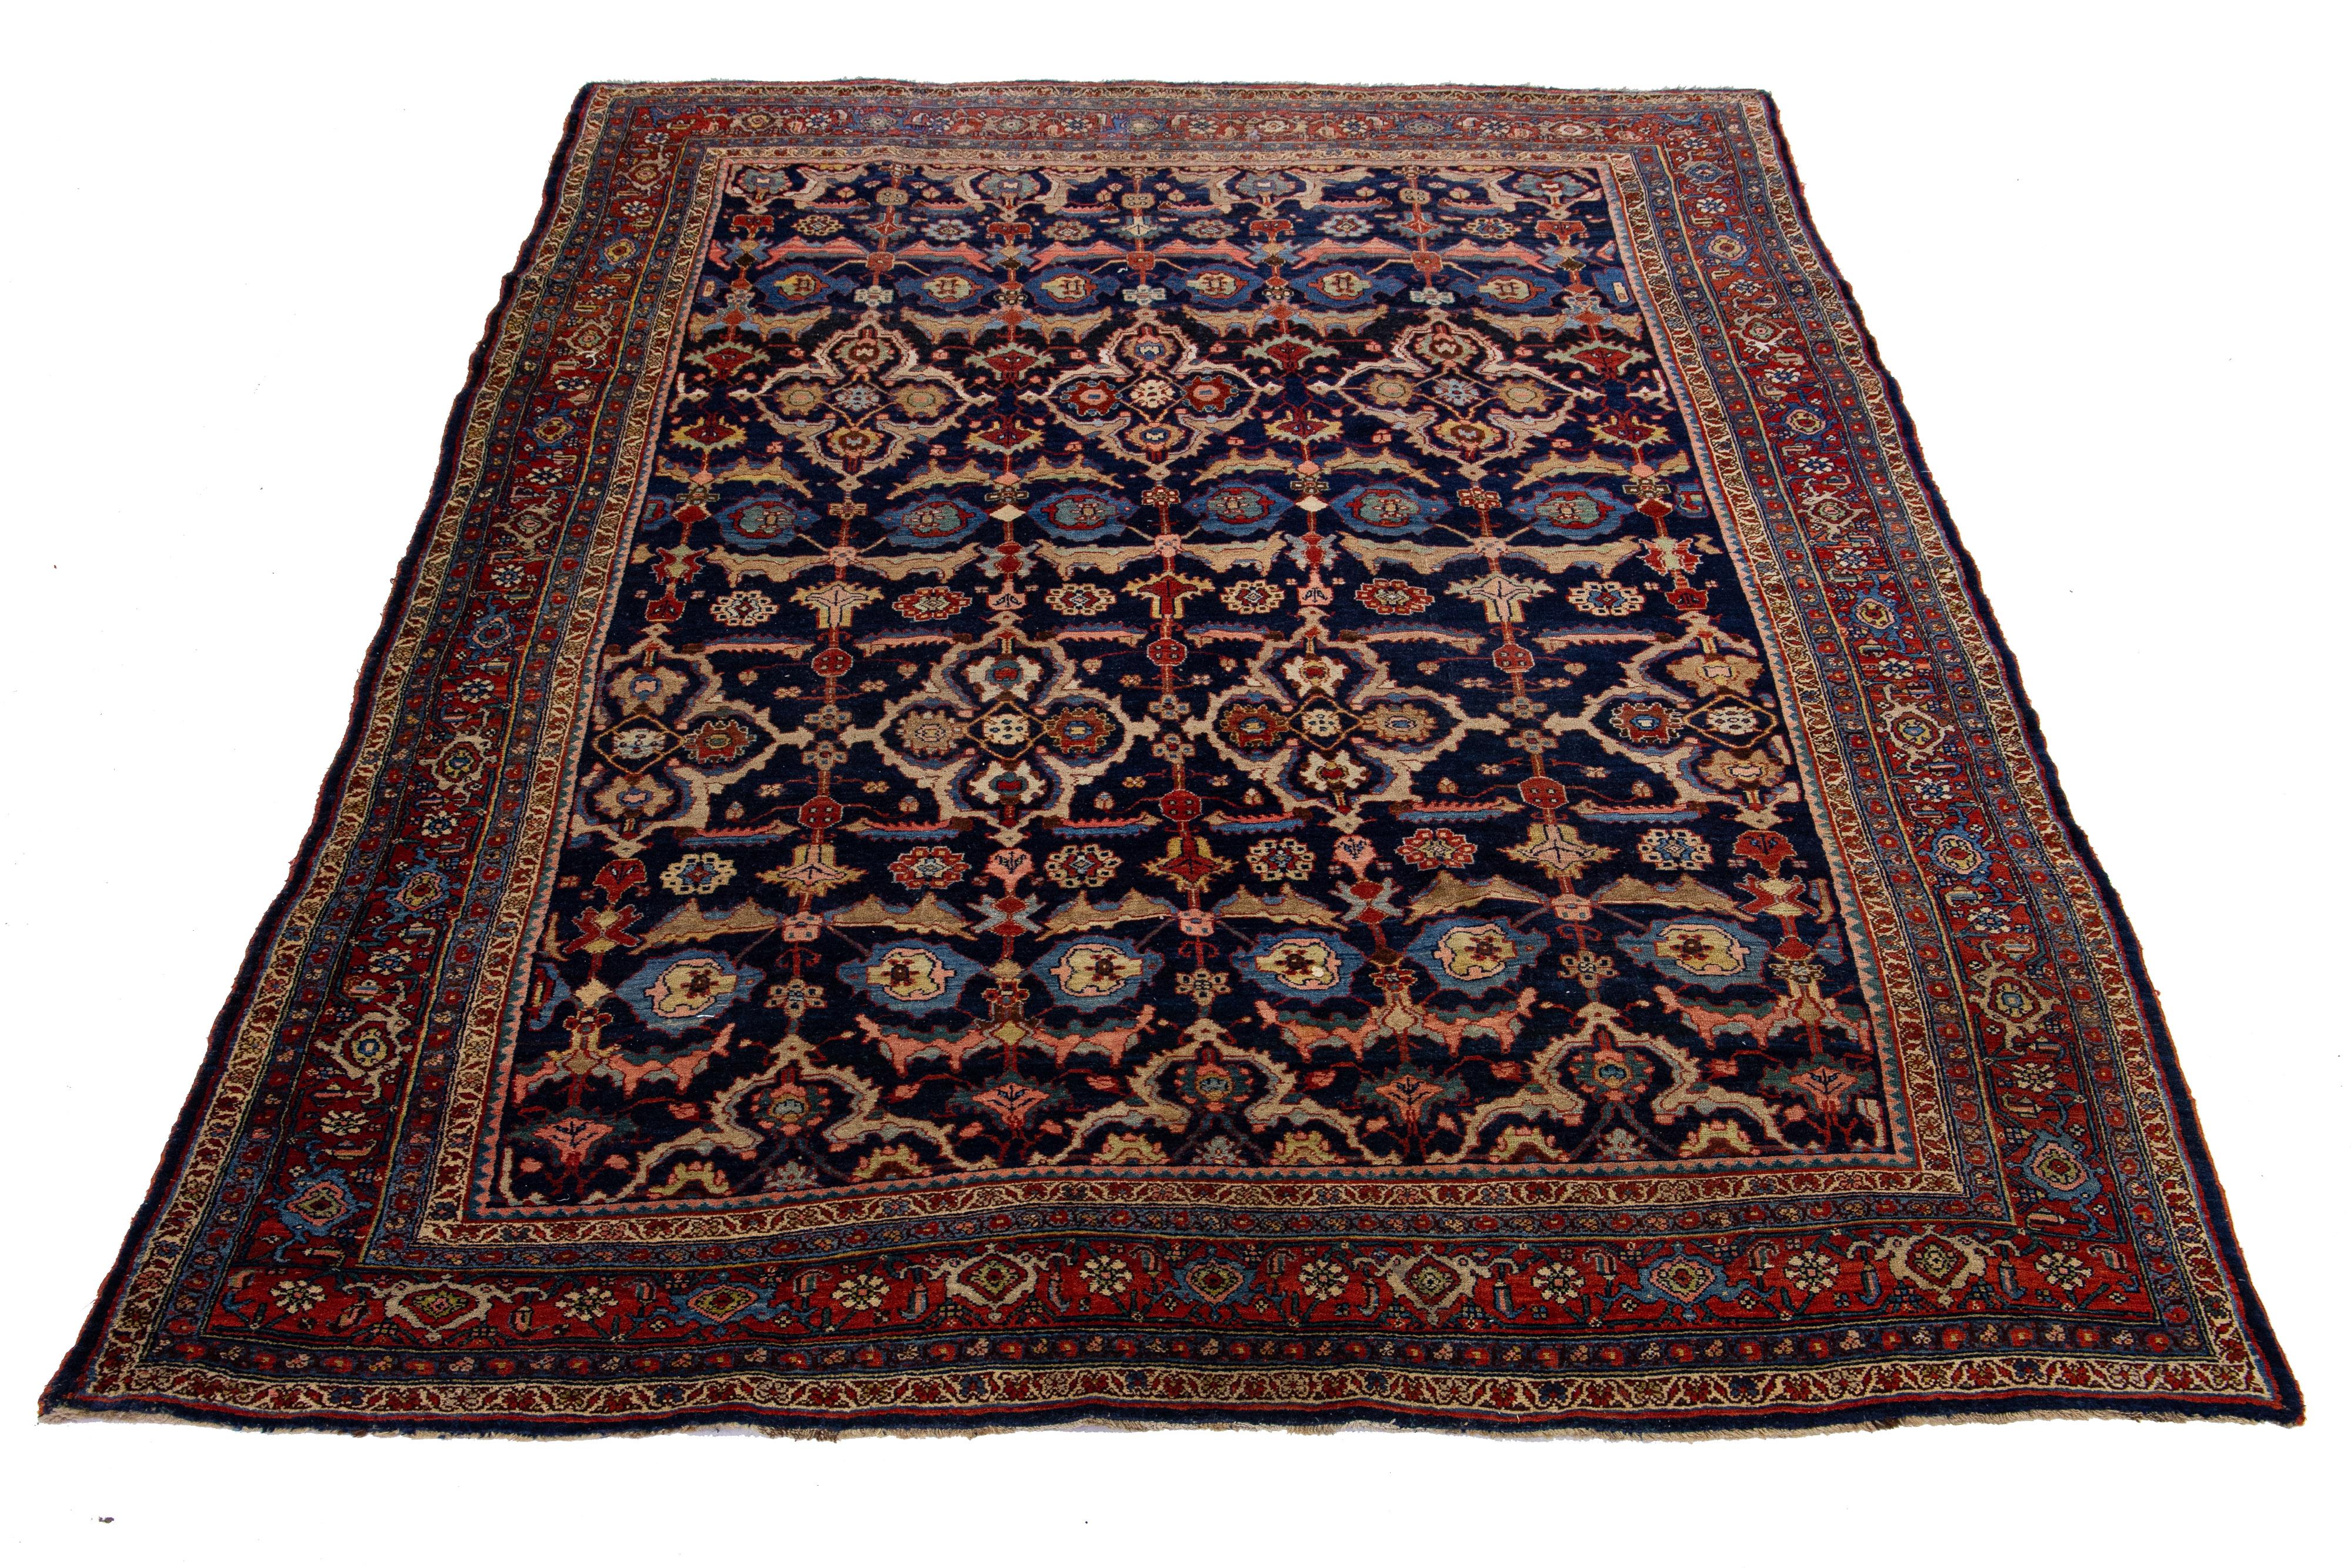 Magnifique tapis ancien Bidjar en laine nouée à la main avec un champ de couleur bleu marine. Ce tapis persan a un cadre rouge avec des accents multicolores dans un magnifique motif floral traditionnel.

Ce tapis mesure 7'9